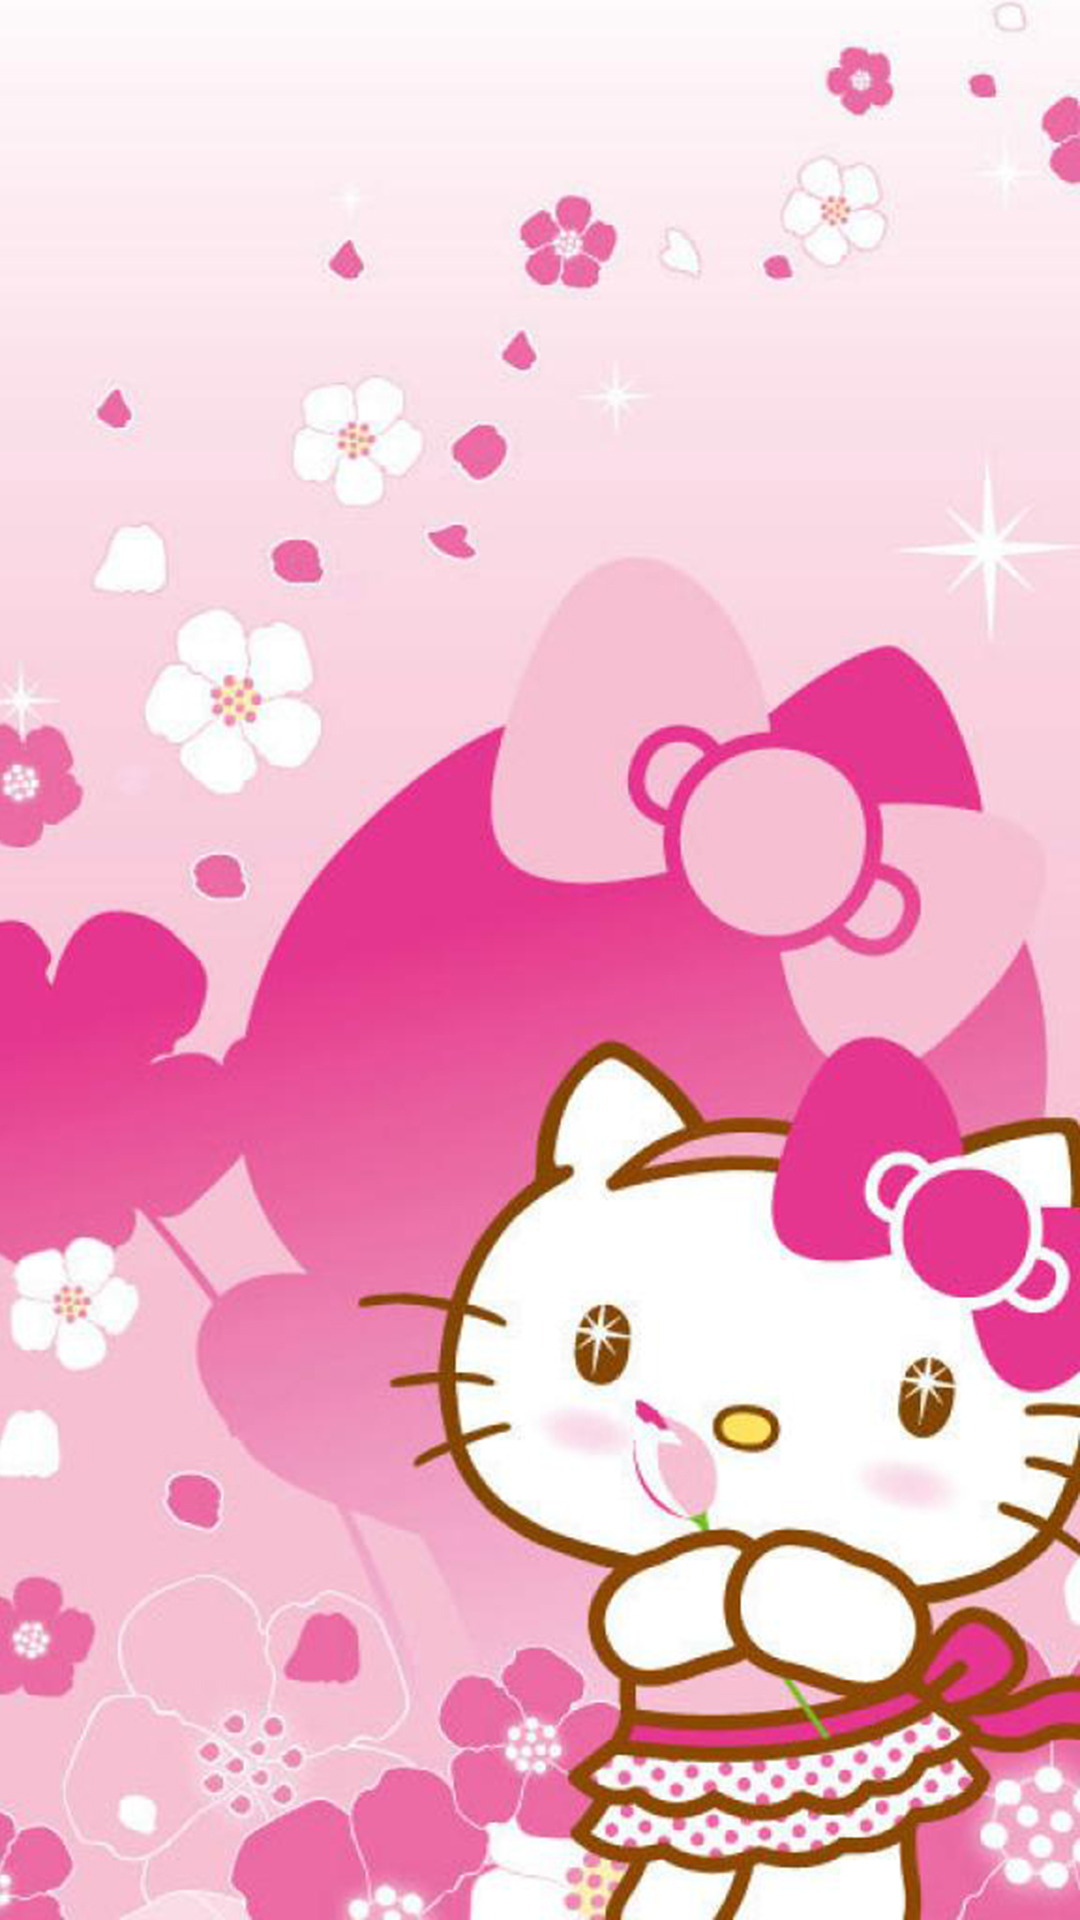 ハローキティのピンクのかわいいiphonex壁紙 Iphone Wallpapers